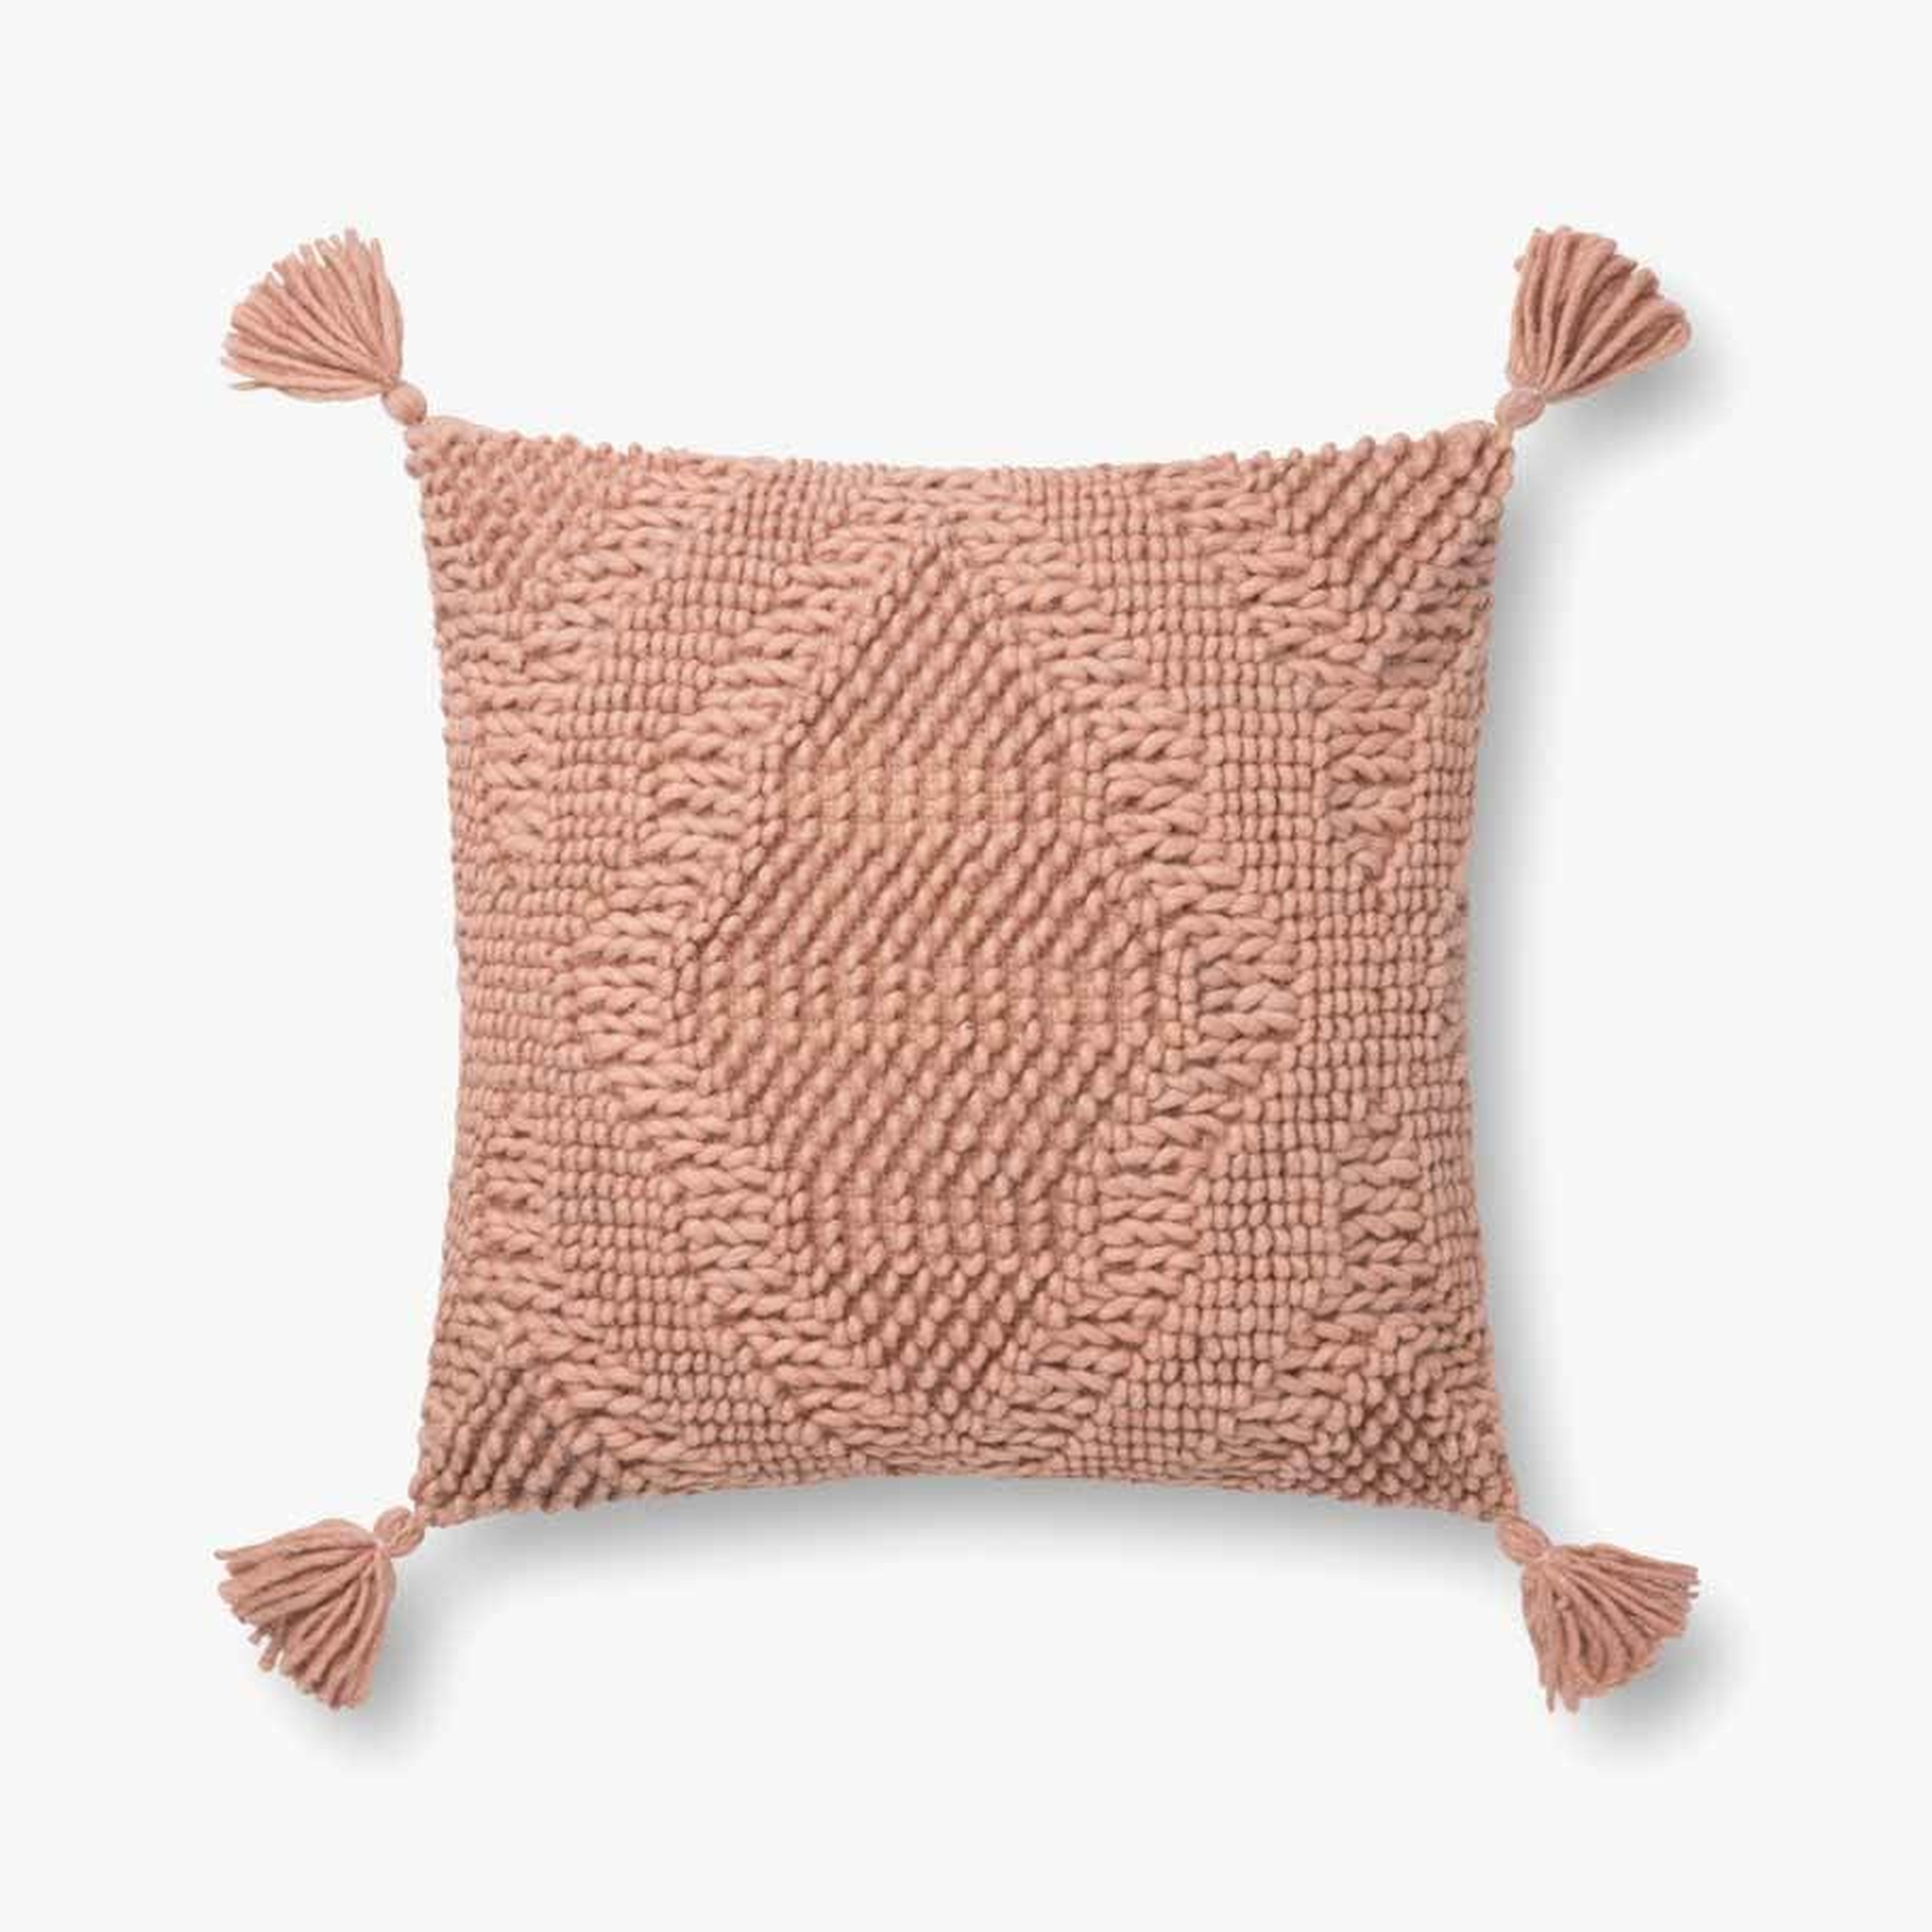 Woven Throw Pillow, Blush, 18" x 18" - Loma Threads